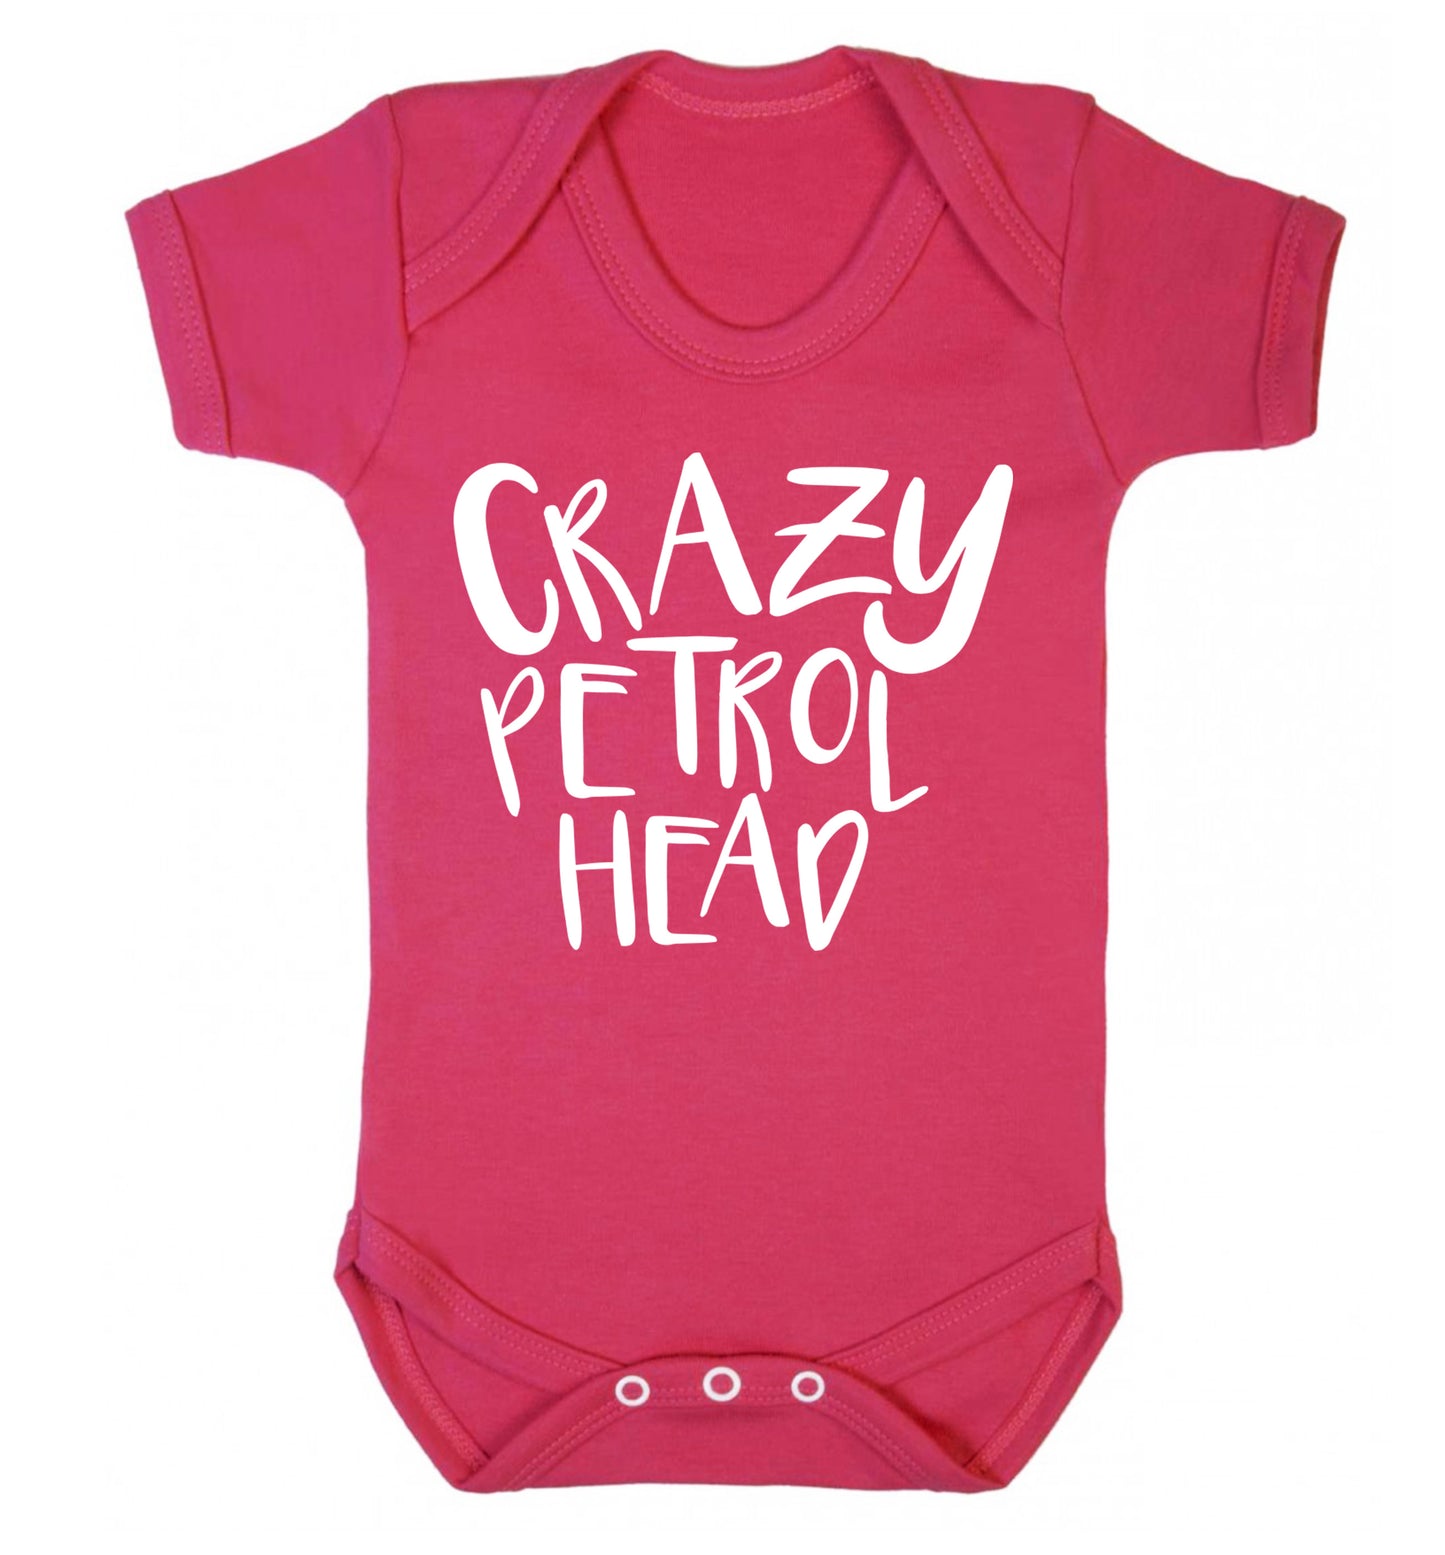 Crazy petrol head Baby Vest dark pink 18-24 months